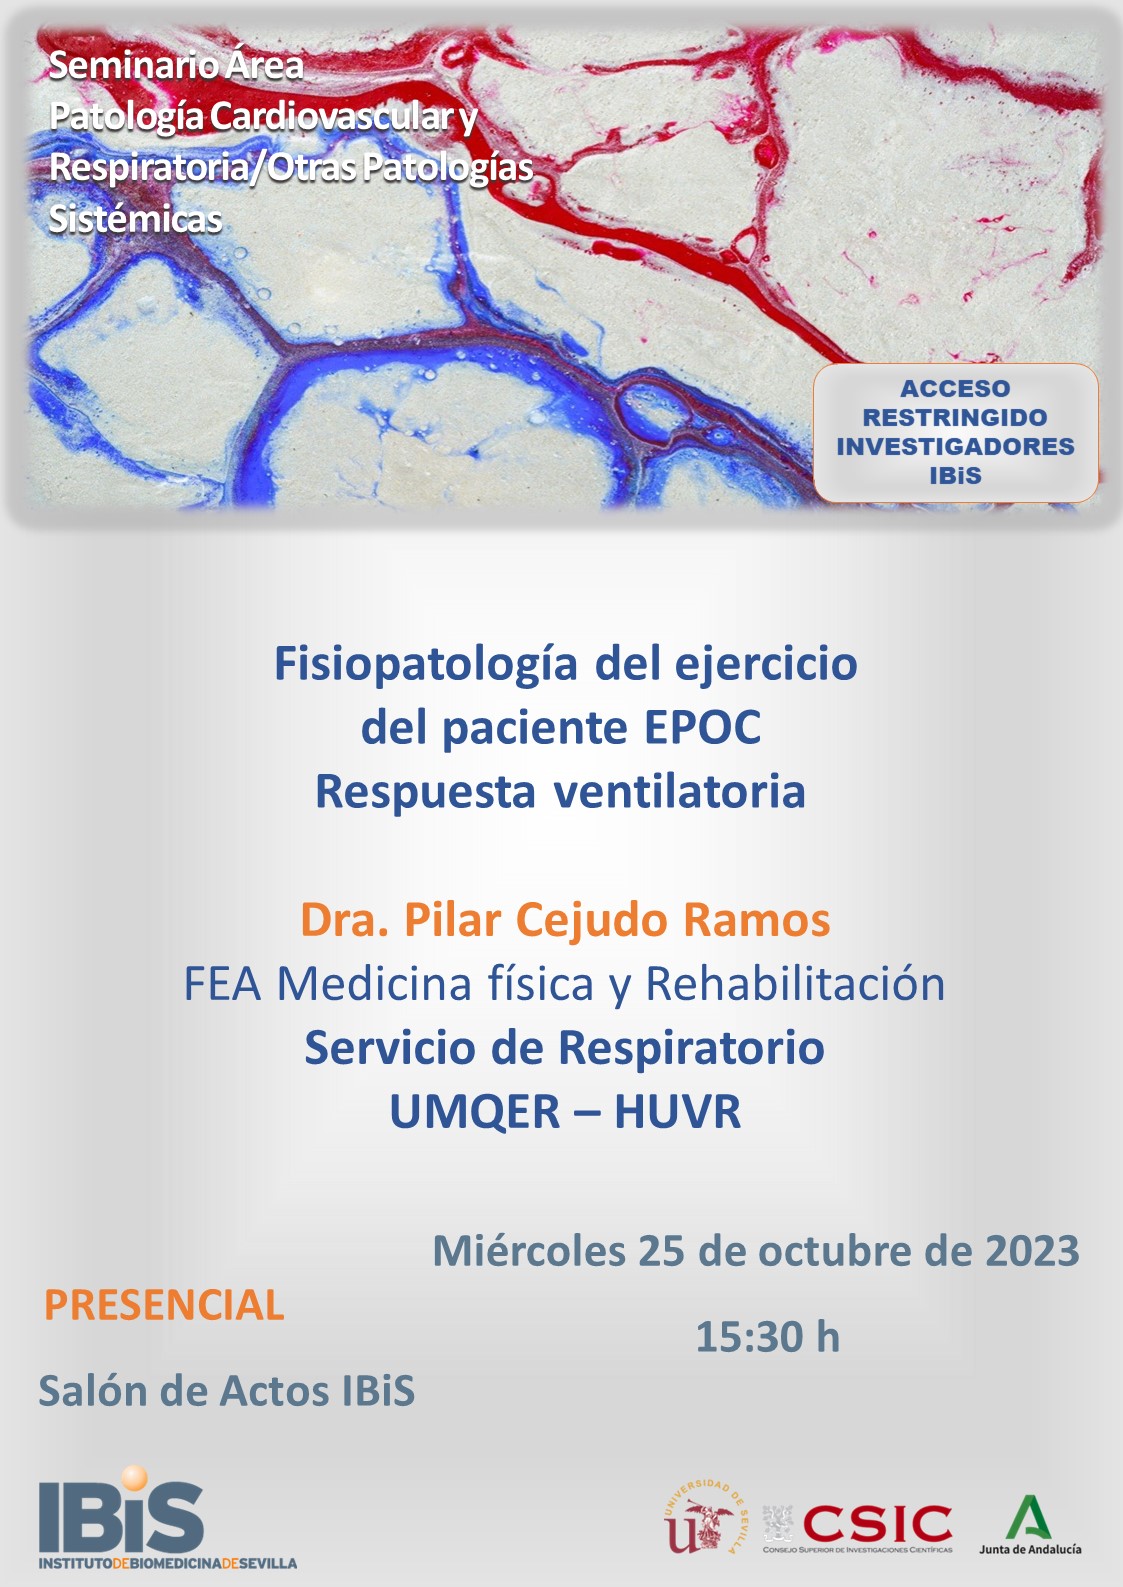 Poster: Fisiopatología del ejercicio del paciente EPOC. Respuesta ventilatoria